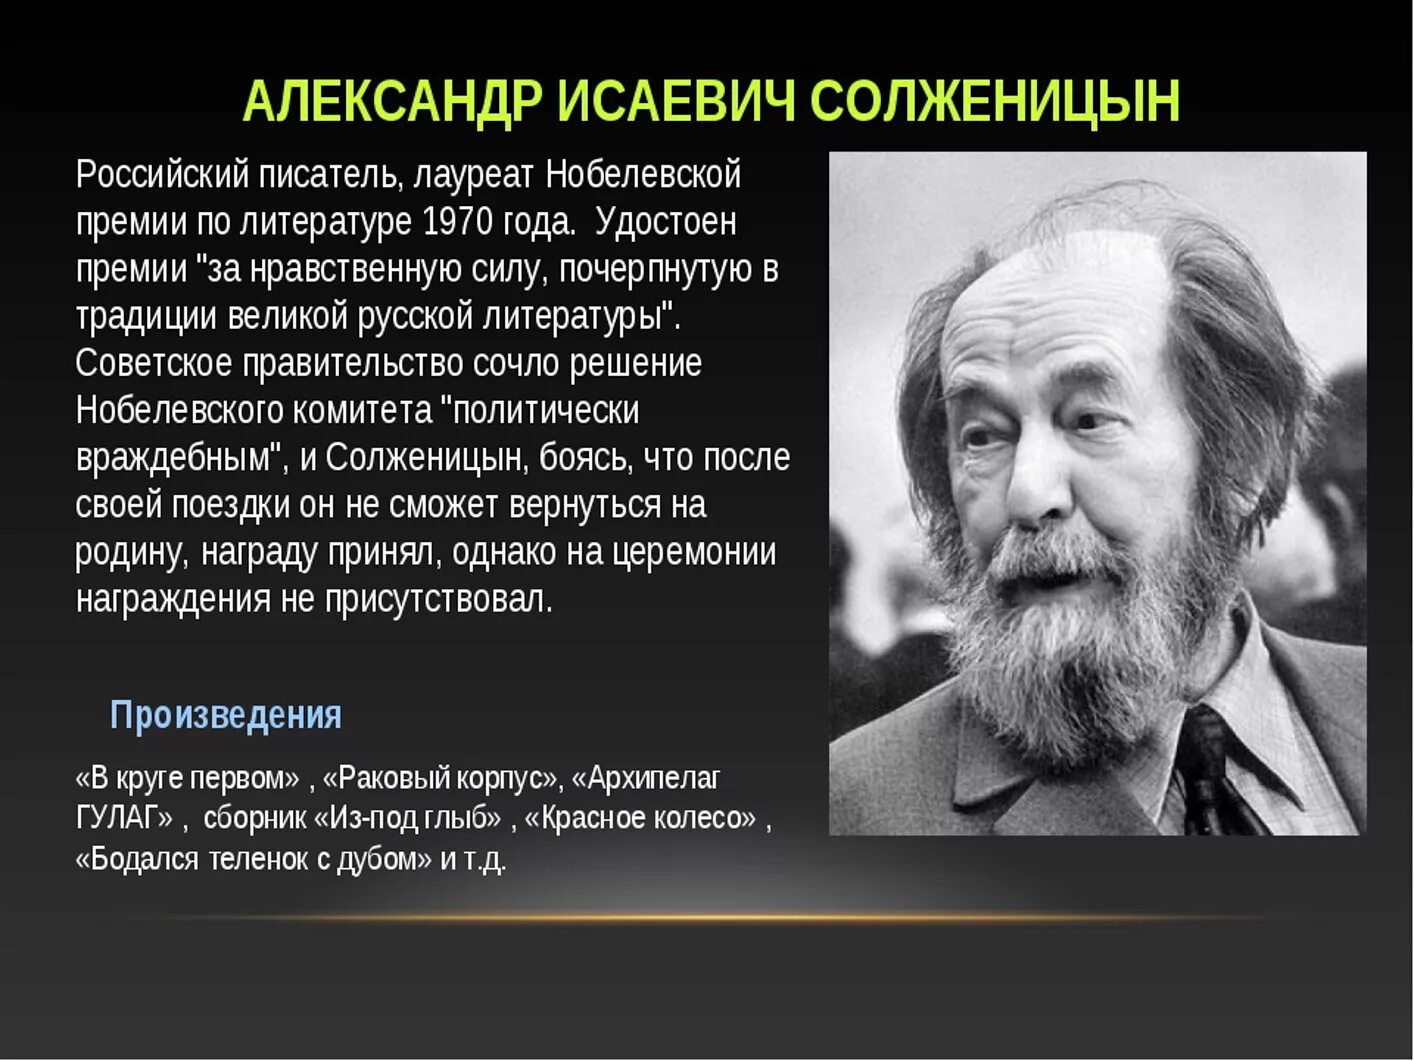 Какое произведение принесло солженицыну мировую известность. Солженицын портрет писателя.